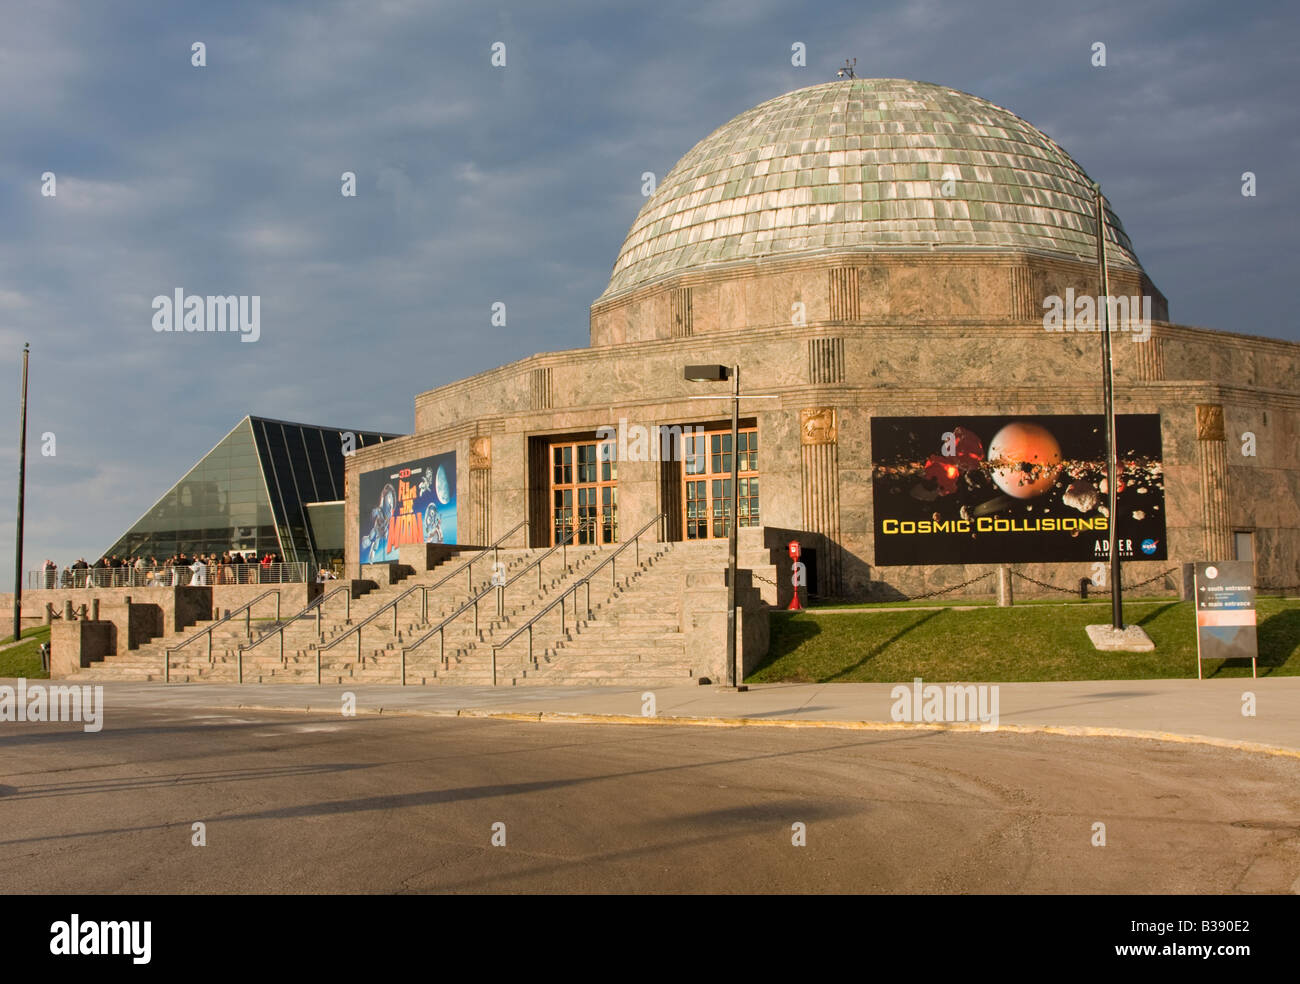 Chicago, Illinois. Adler Planetarium. Stock Photo